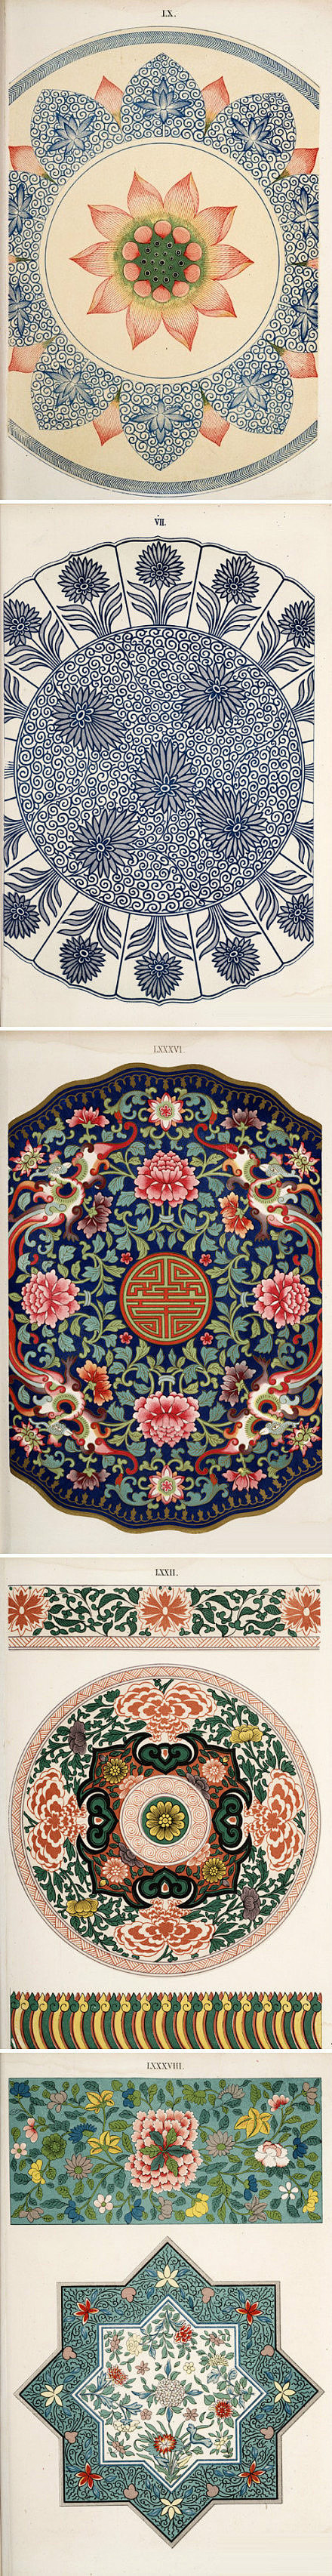 中国经典传统纹样。